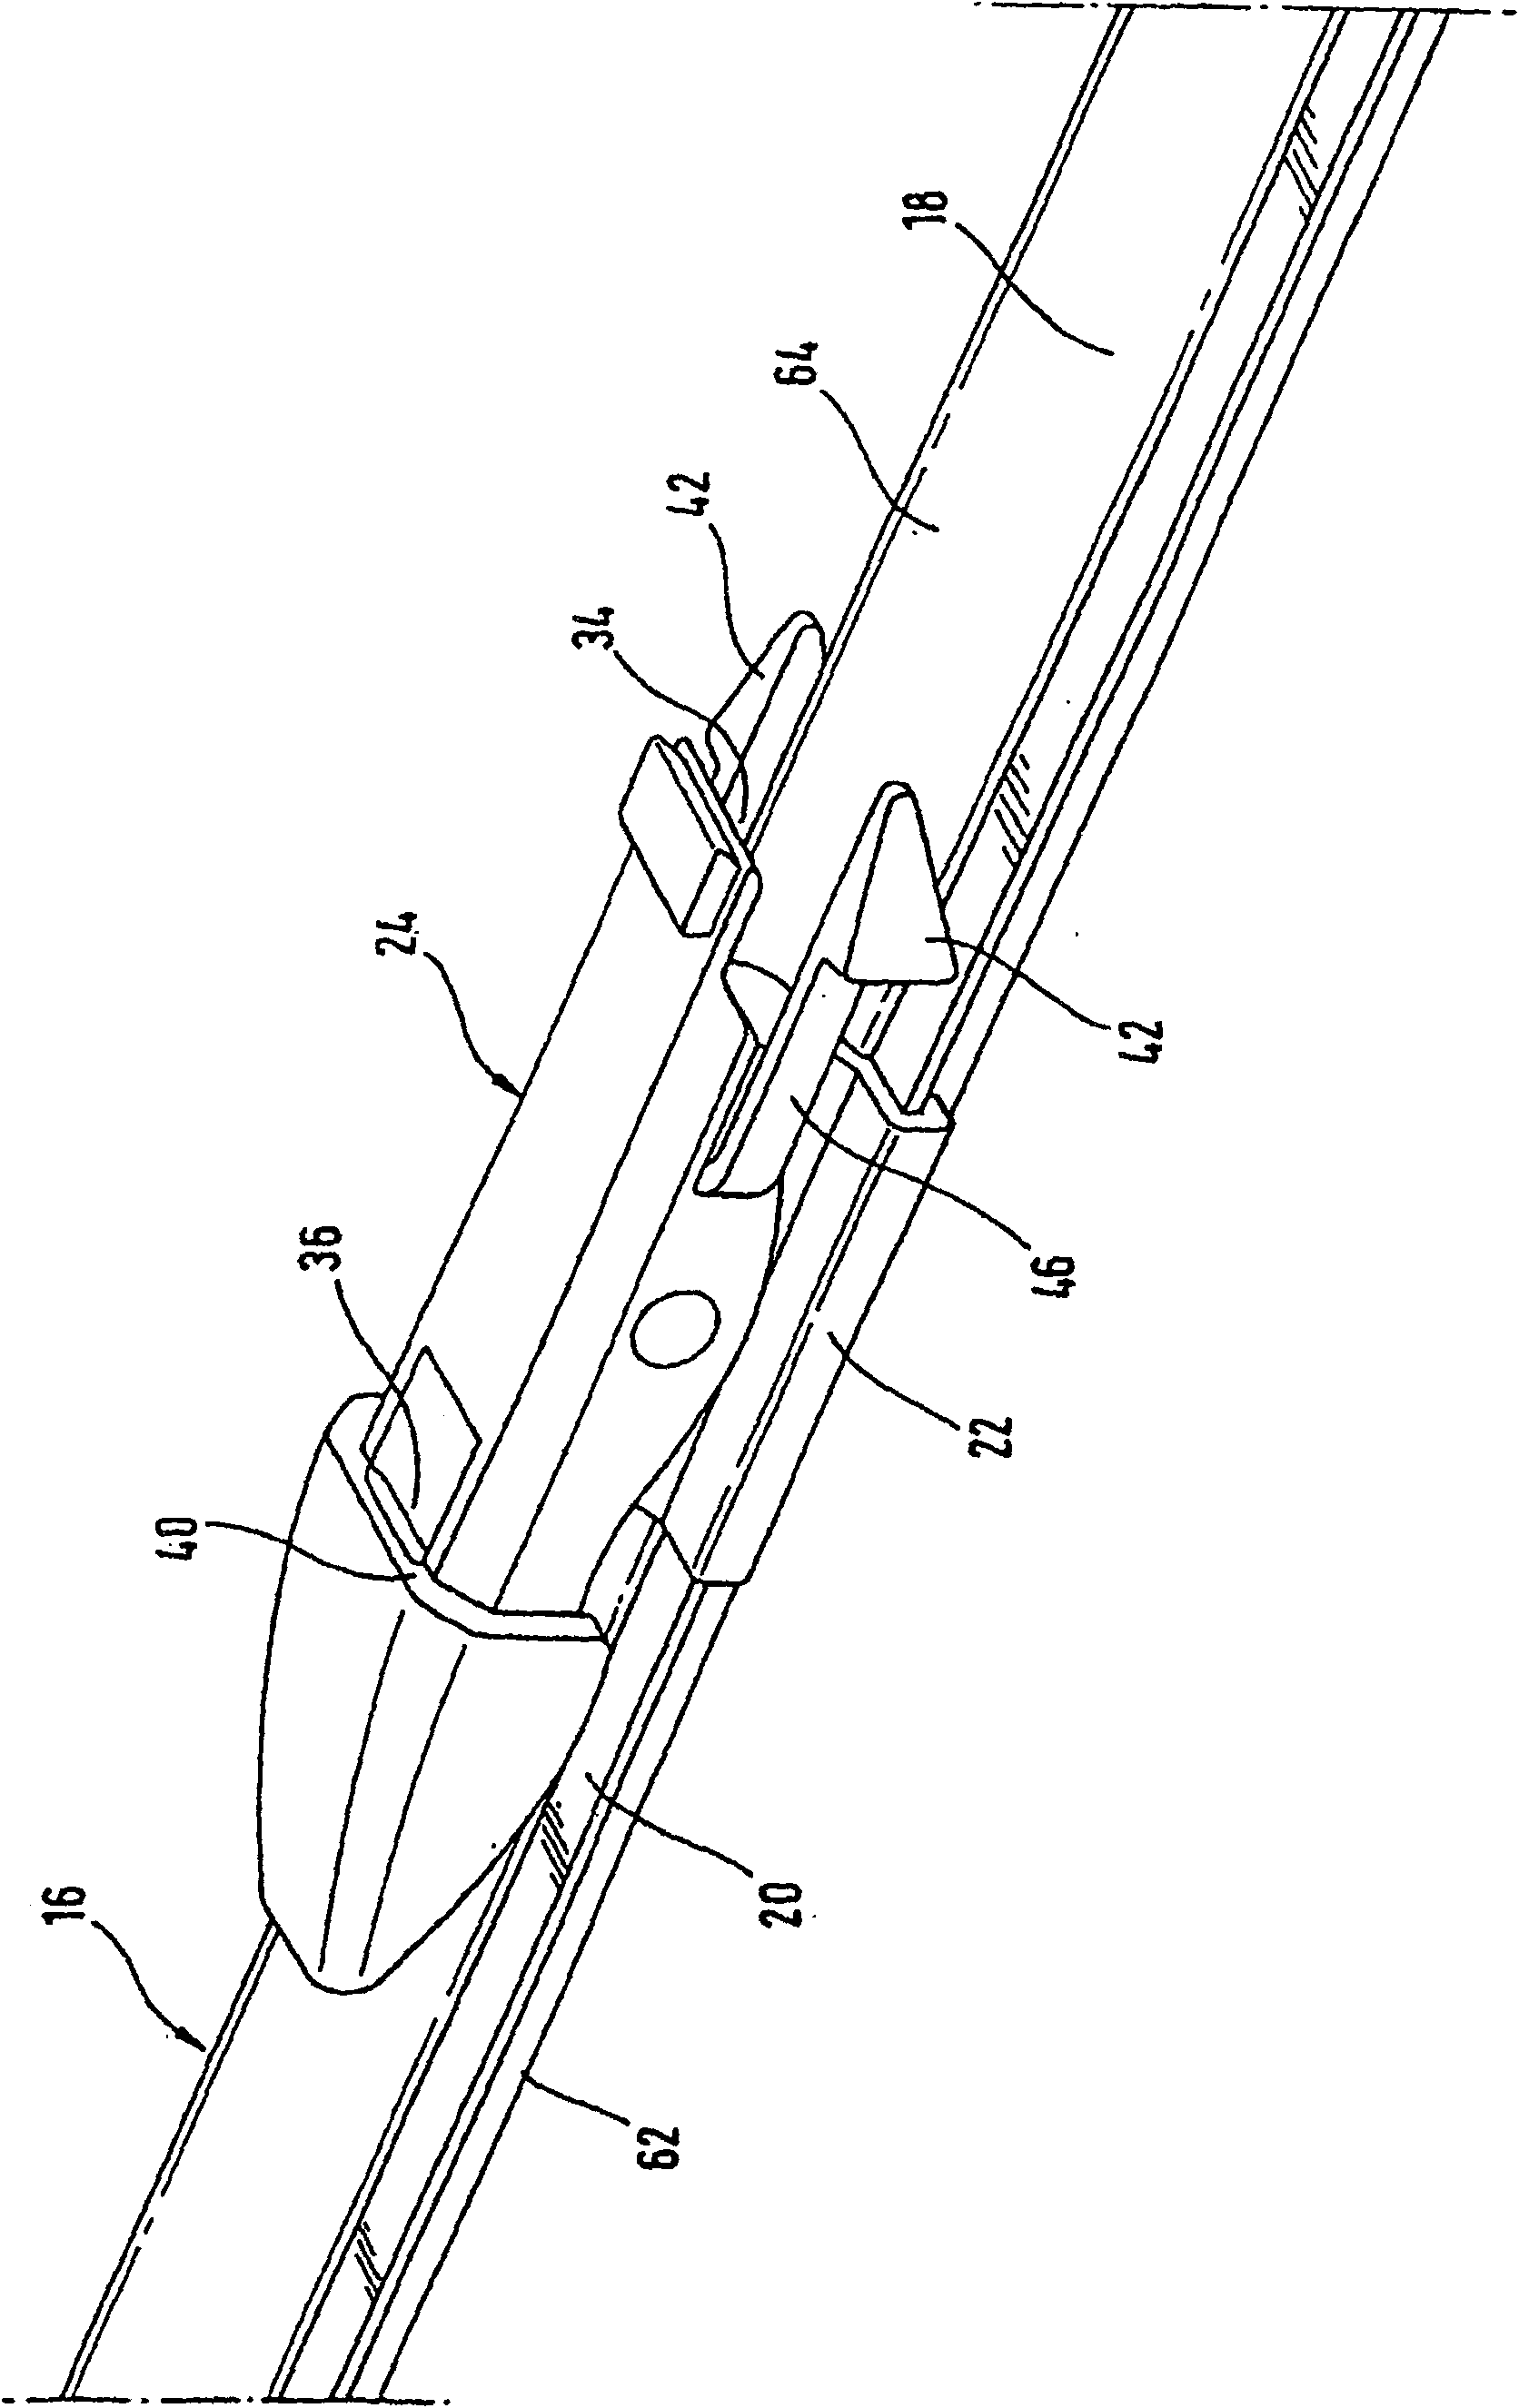 Wiper device comprising a flat wiper blade and wiper arm